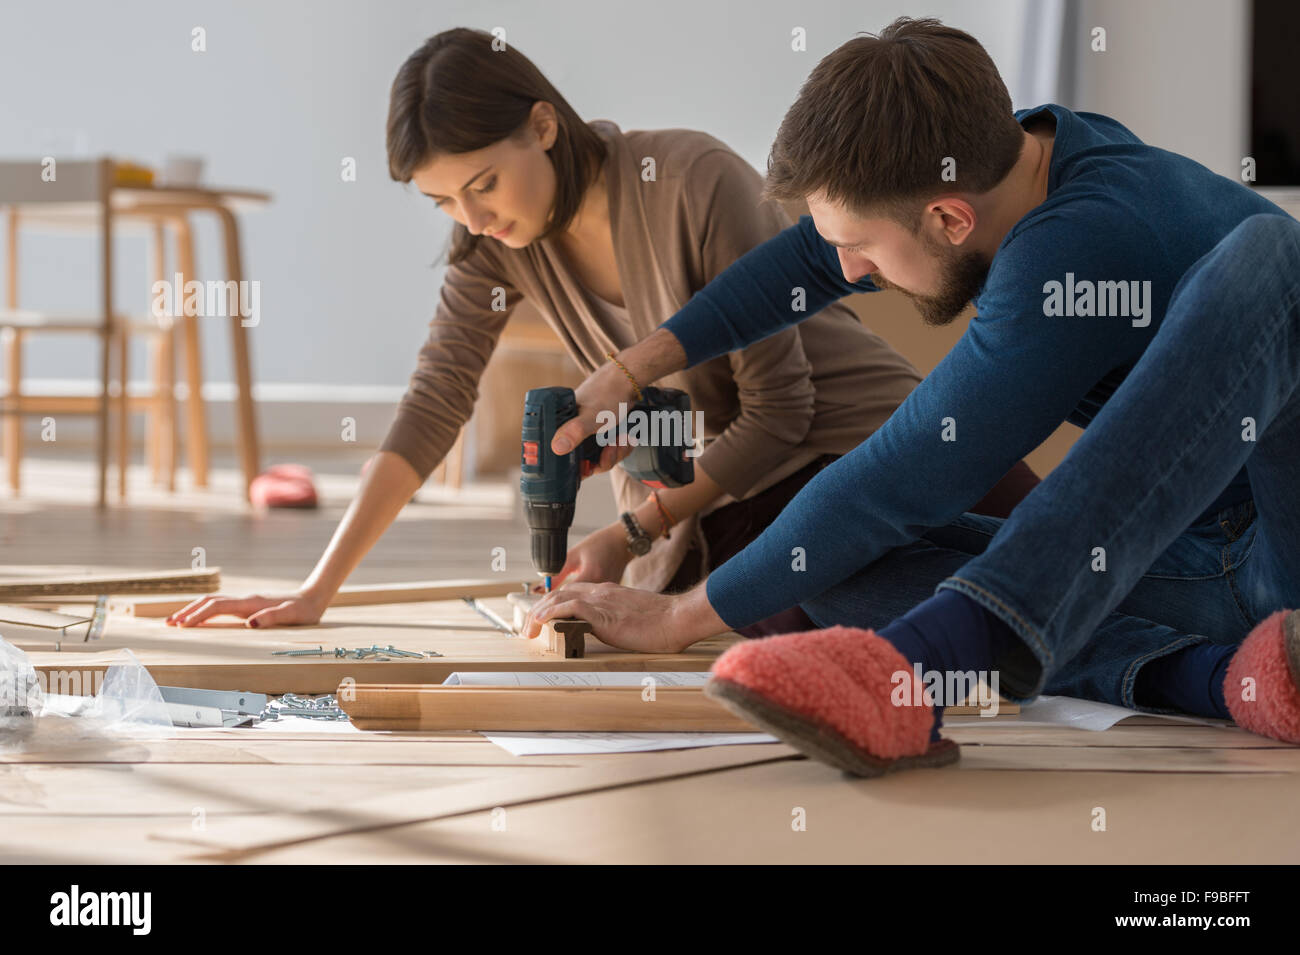 Felice coppia giovane mettendo insieme self montaggio dei mobili che si muovono nella loro nuova casa. Foto Stock